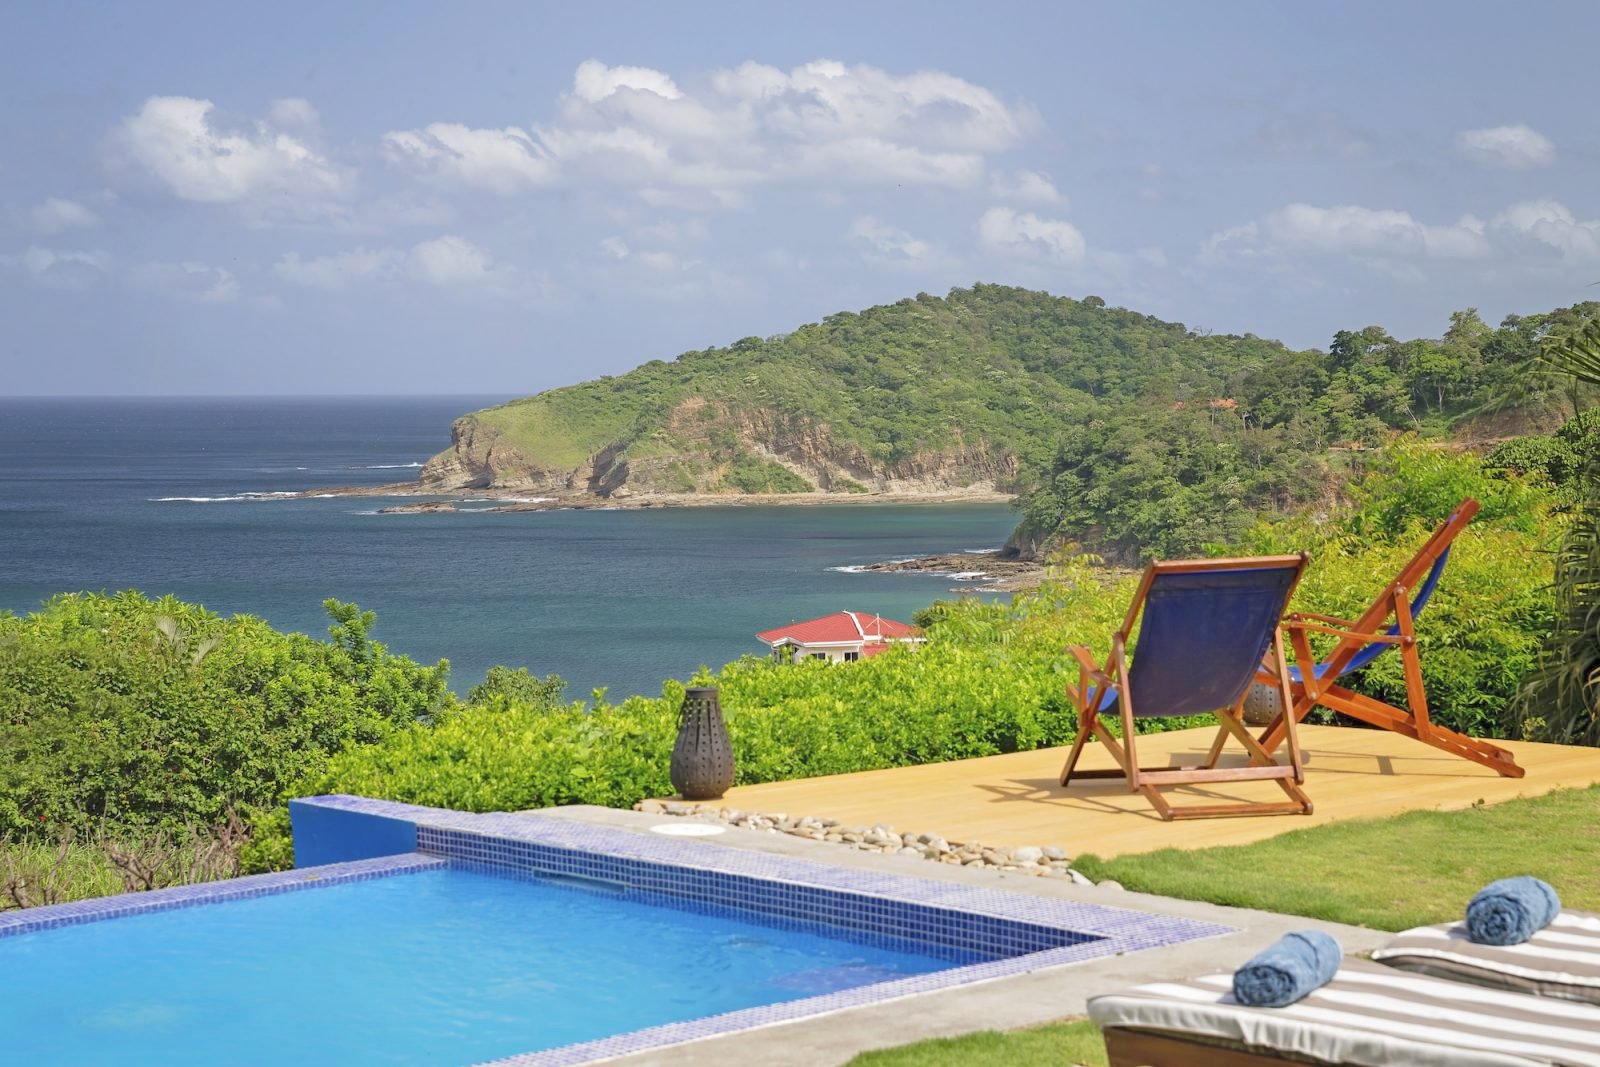 Pacific Marlin San Juan Del Sur Nicaragua Property Real Estate Investing (16).jpg